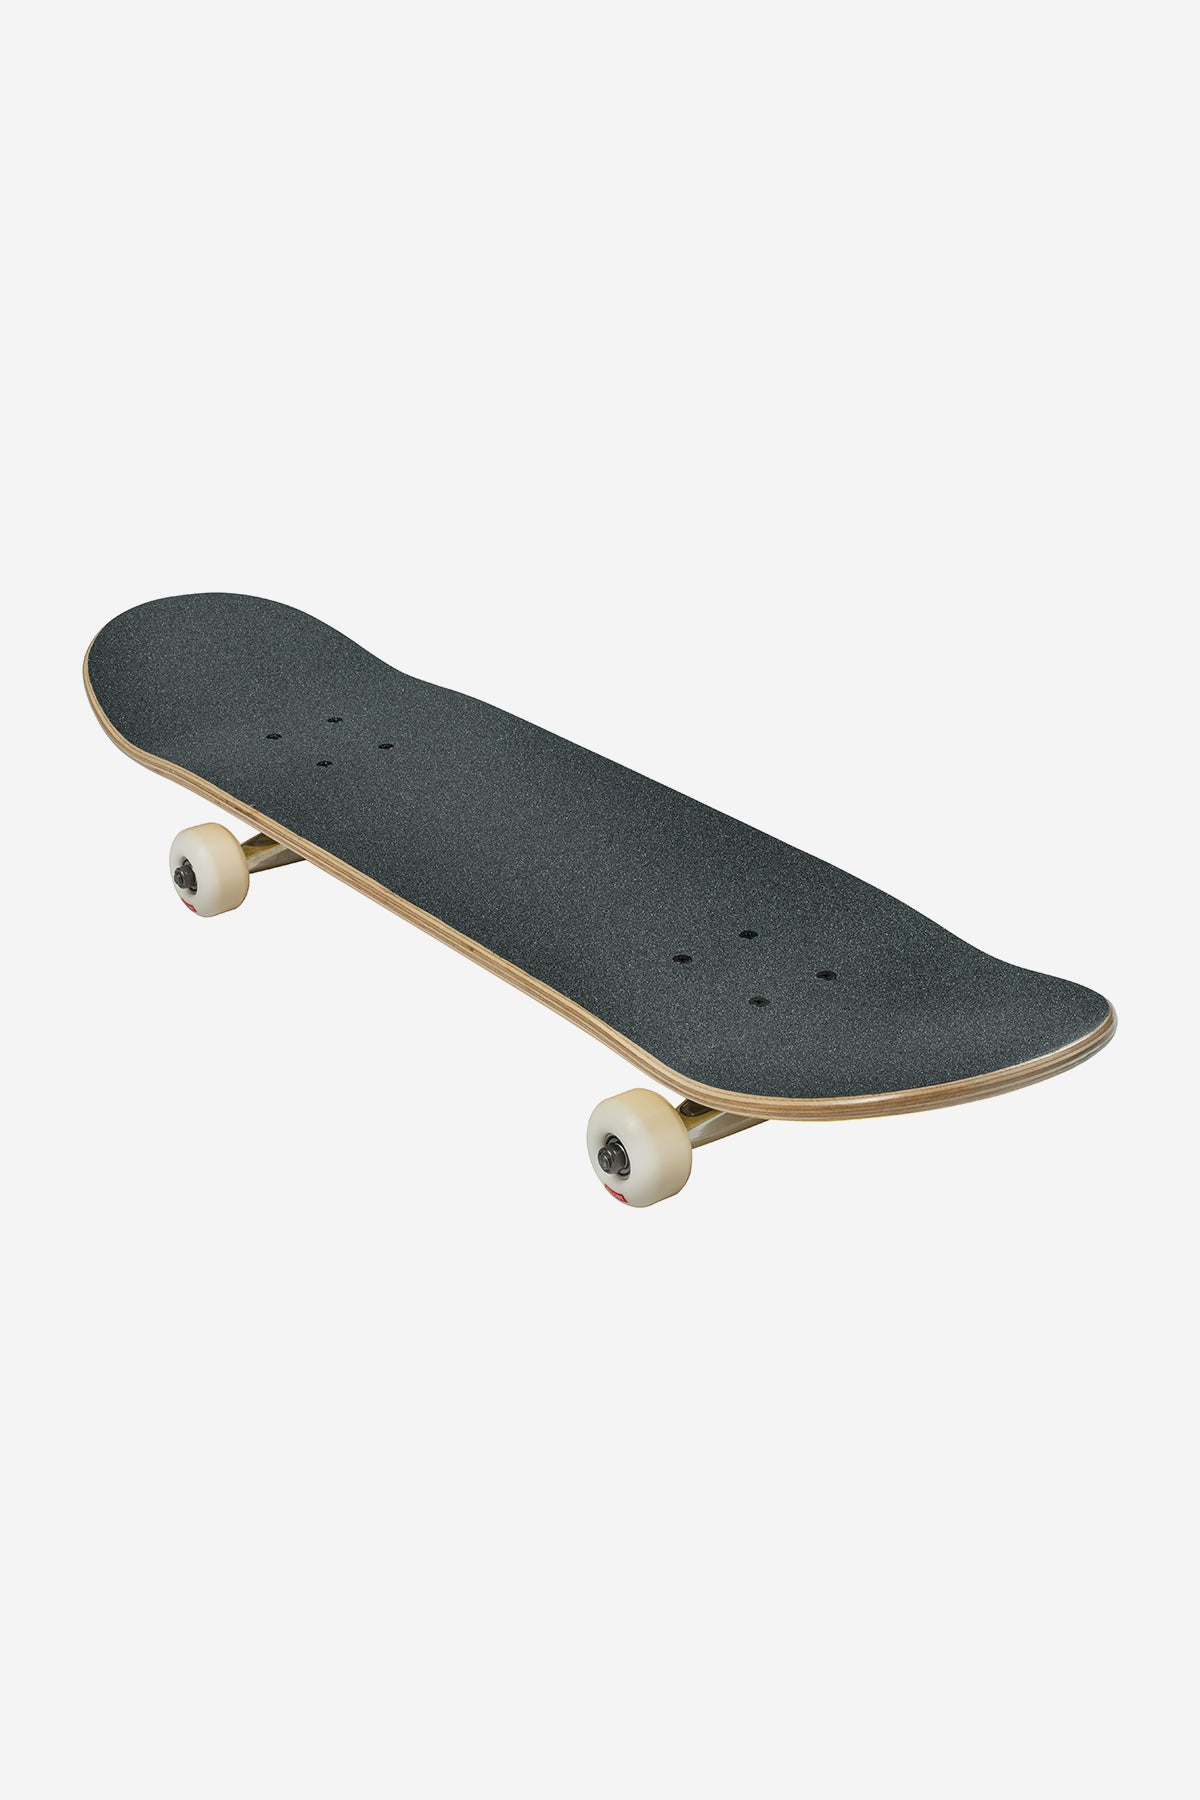 Globe - Goodstock - Sahara- 8.375" Complete Skateboard